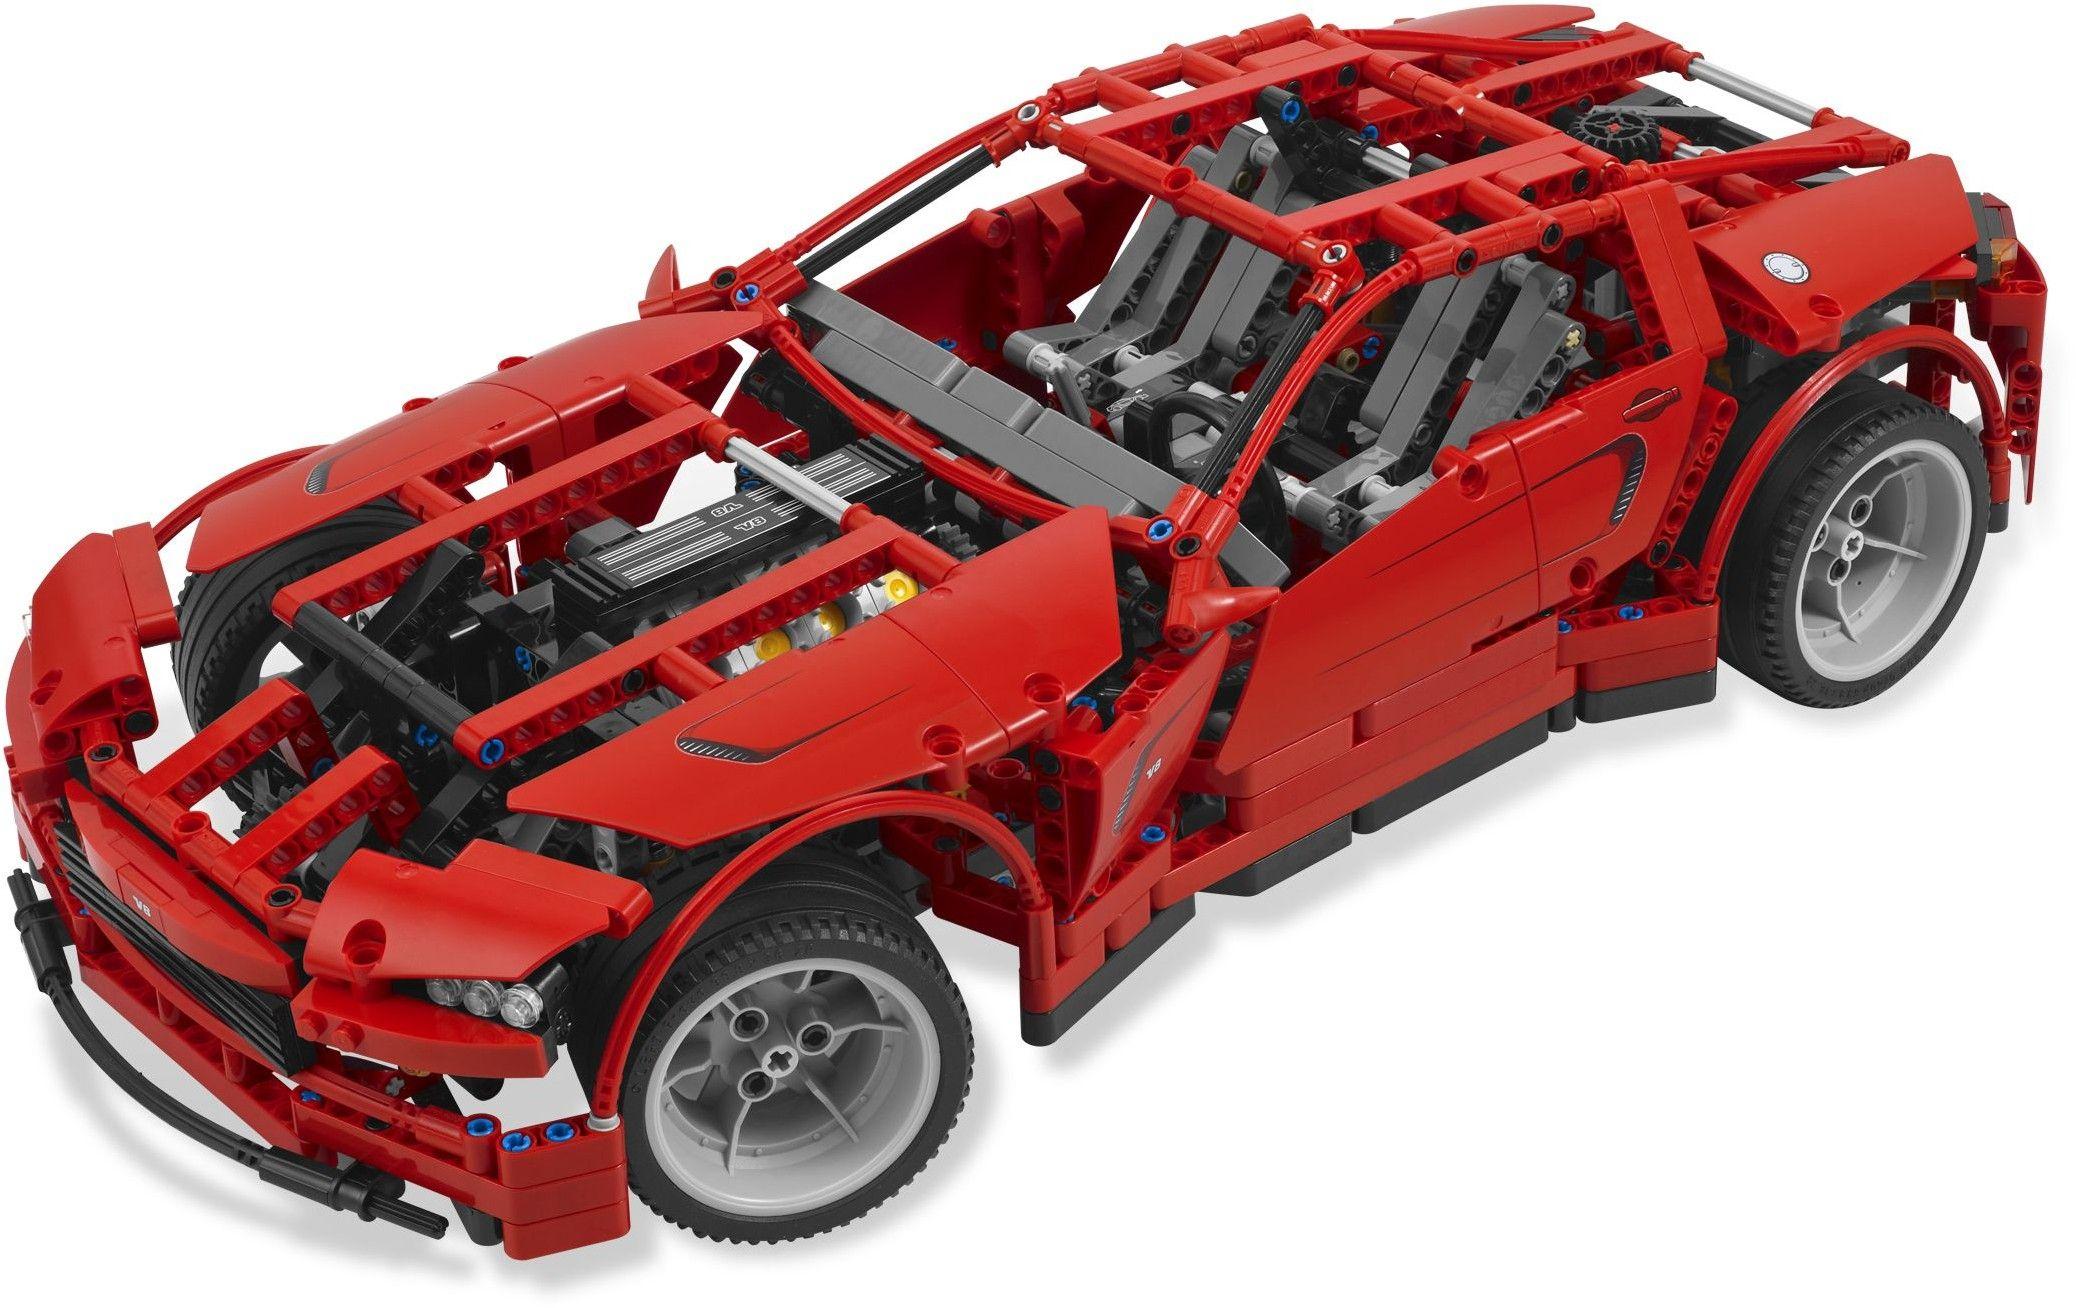 Technic. Brickset: LEGO set guide and database